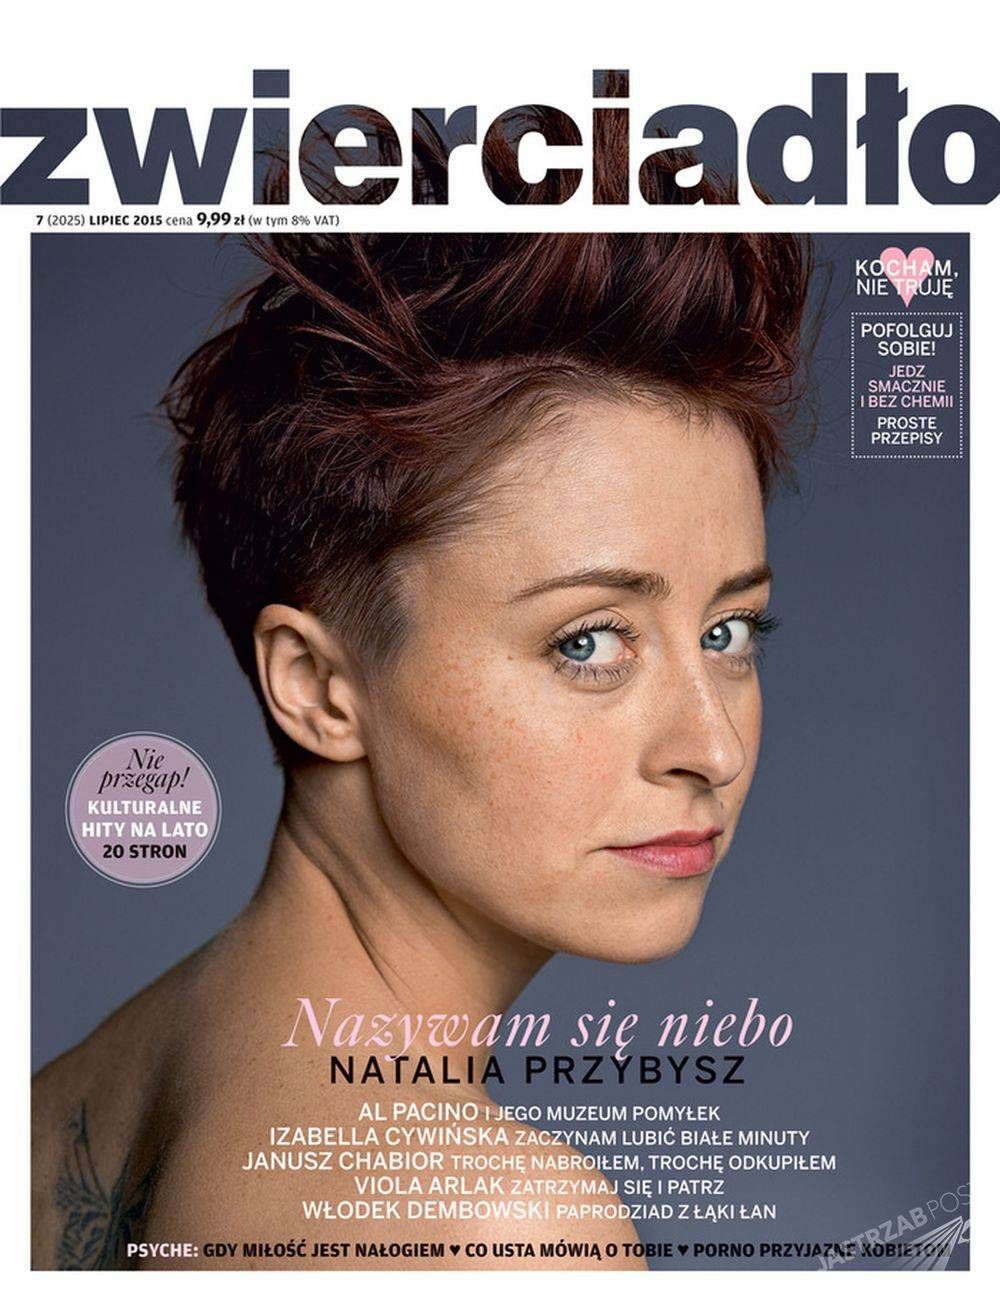 Natalia Przybysz na okładce Zwierciadła, fot. wiertualnemedia.pl